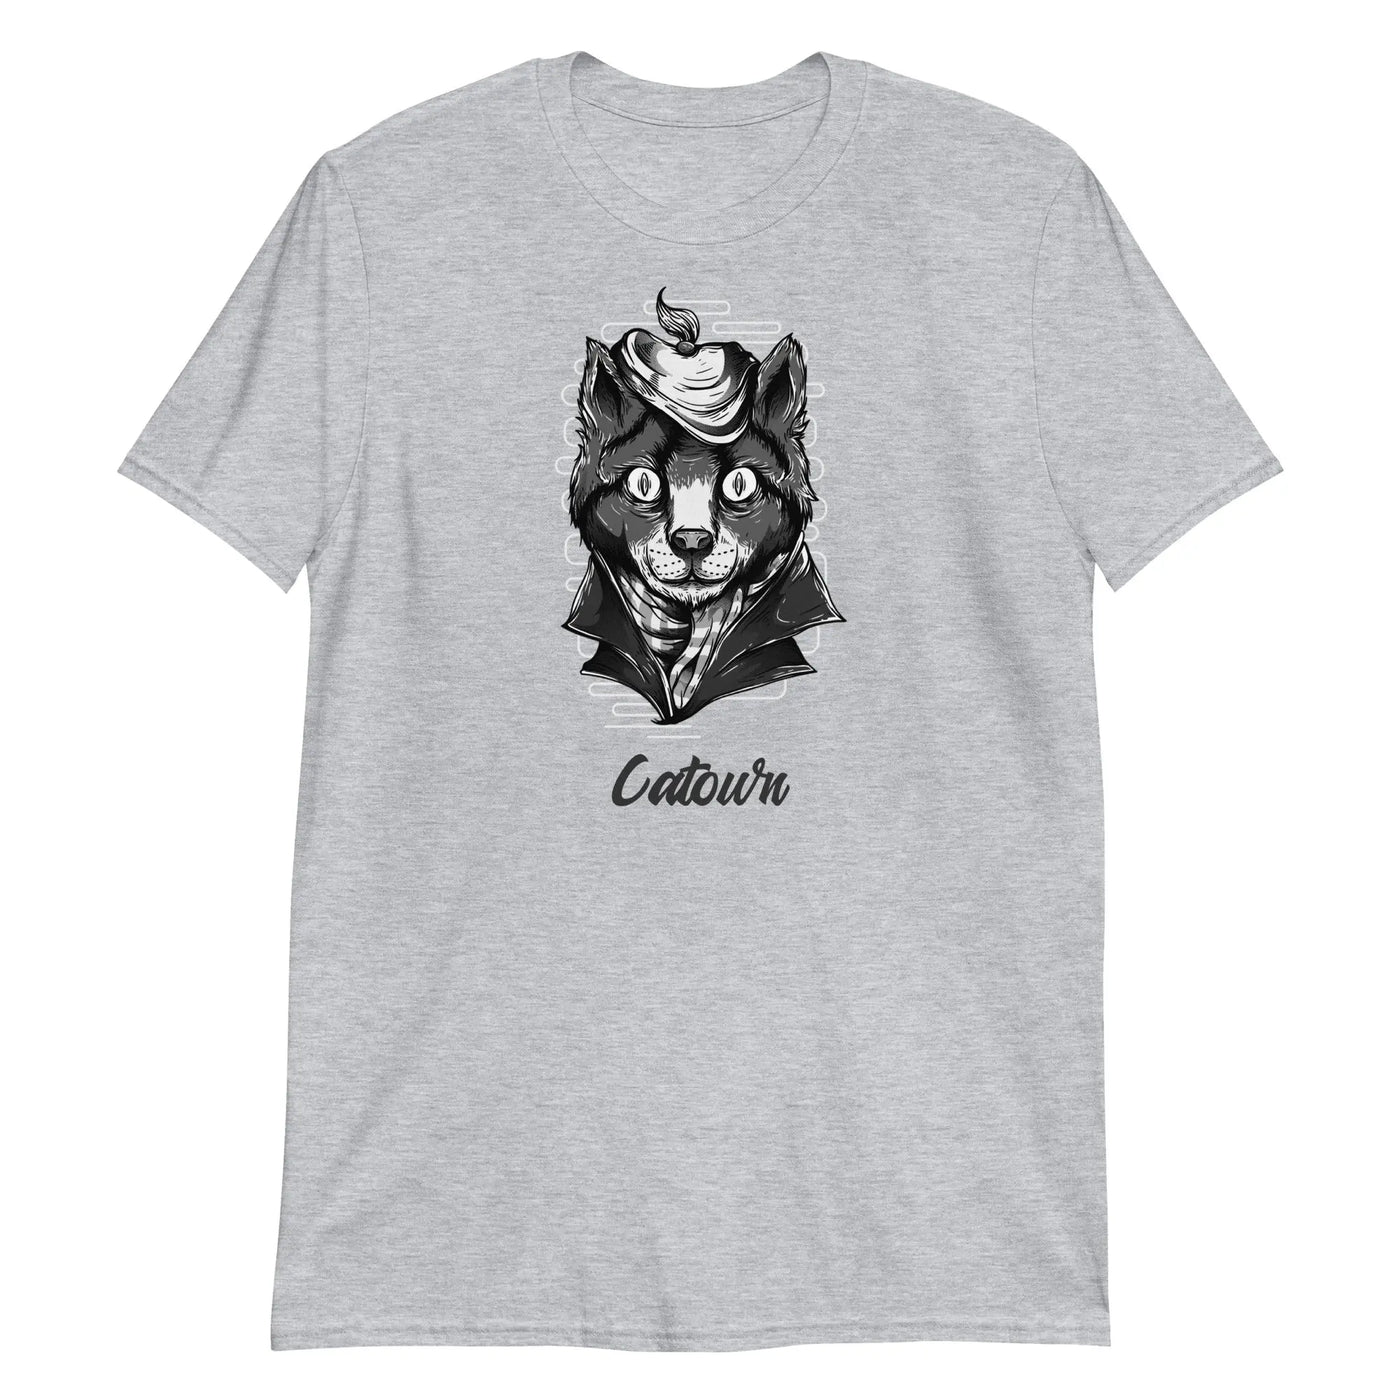 Catown Unisex T-Shirt